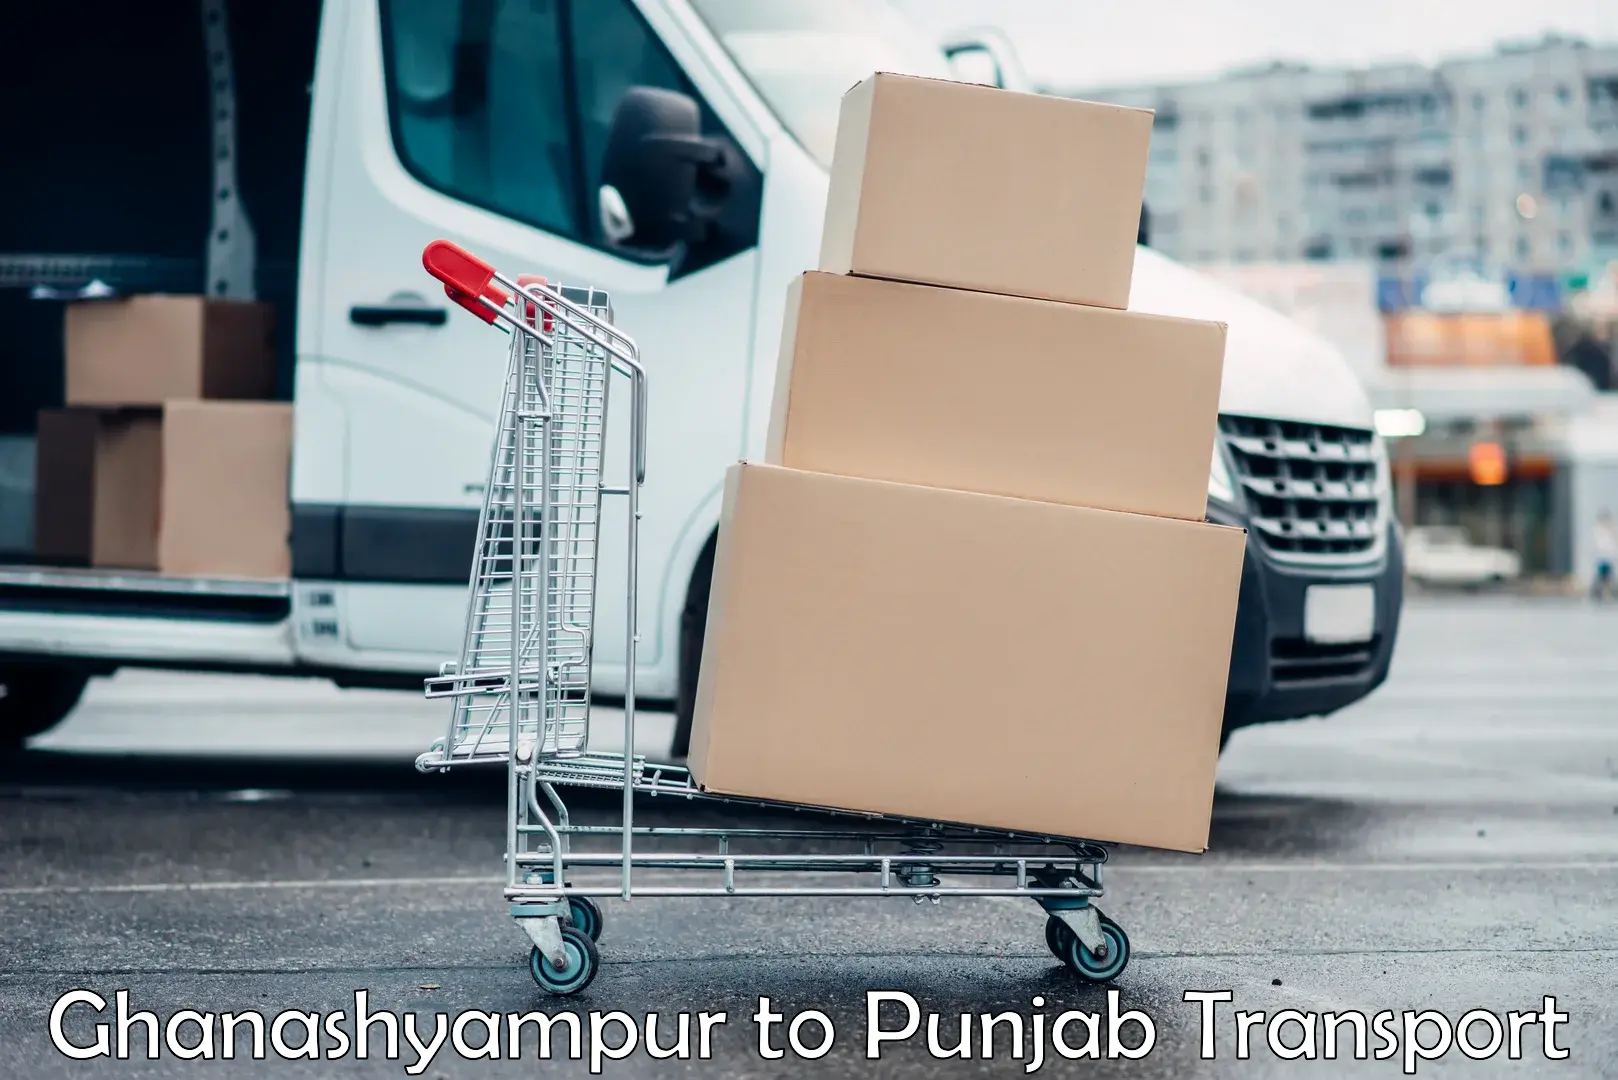 International cargo transportation services Ghanashyampur to Faridkot